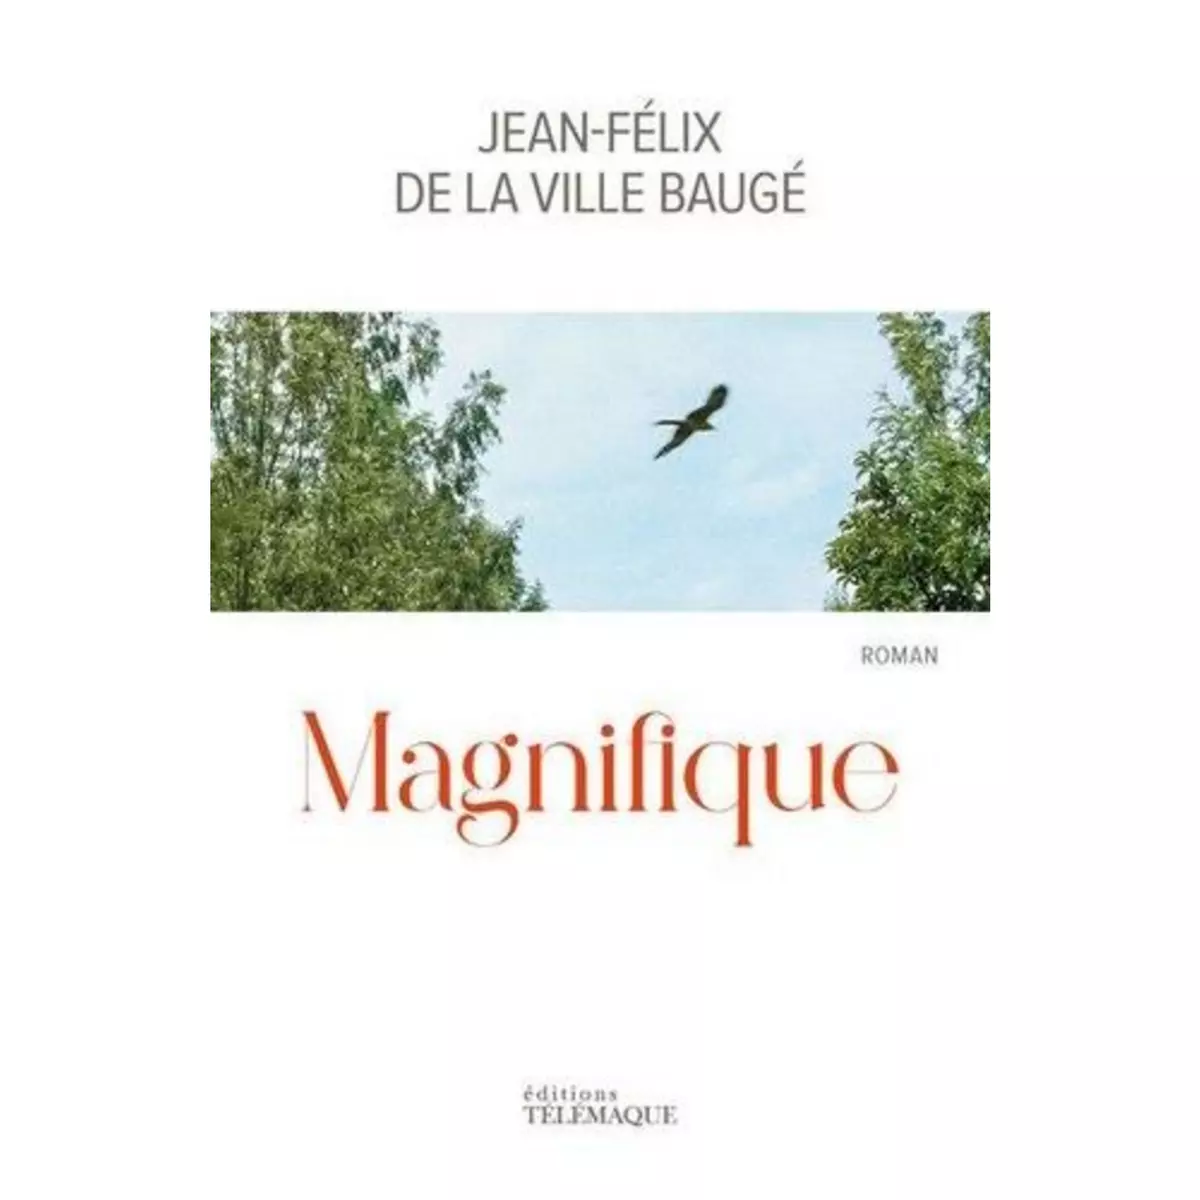  MAGNIFIQUE, La Ville Baugé Jean-Félix de